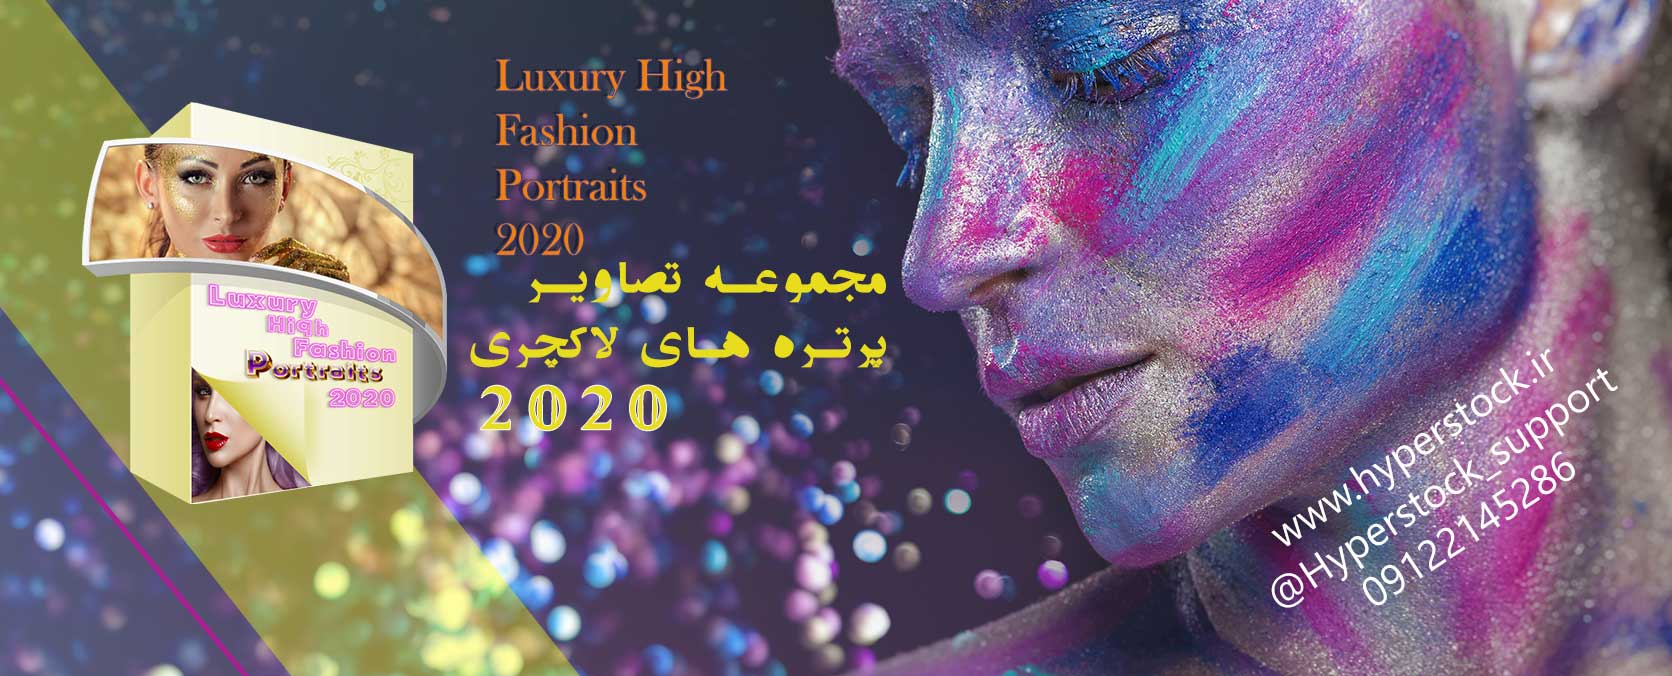 مجموعه تصاویر پرتره های لاکچری Luxury High Fashion Portraits 2020